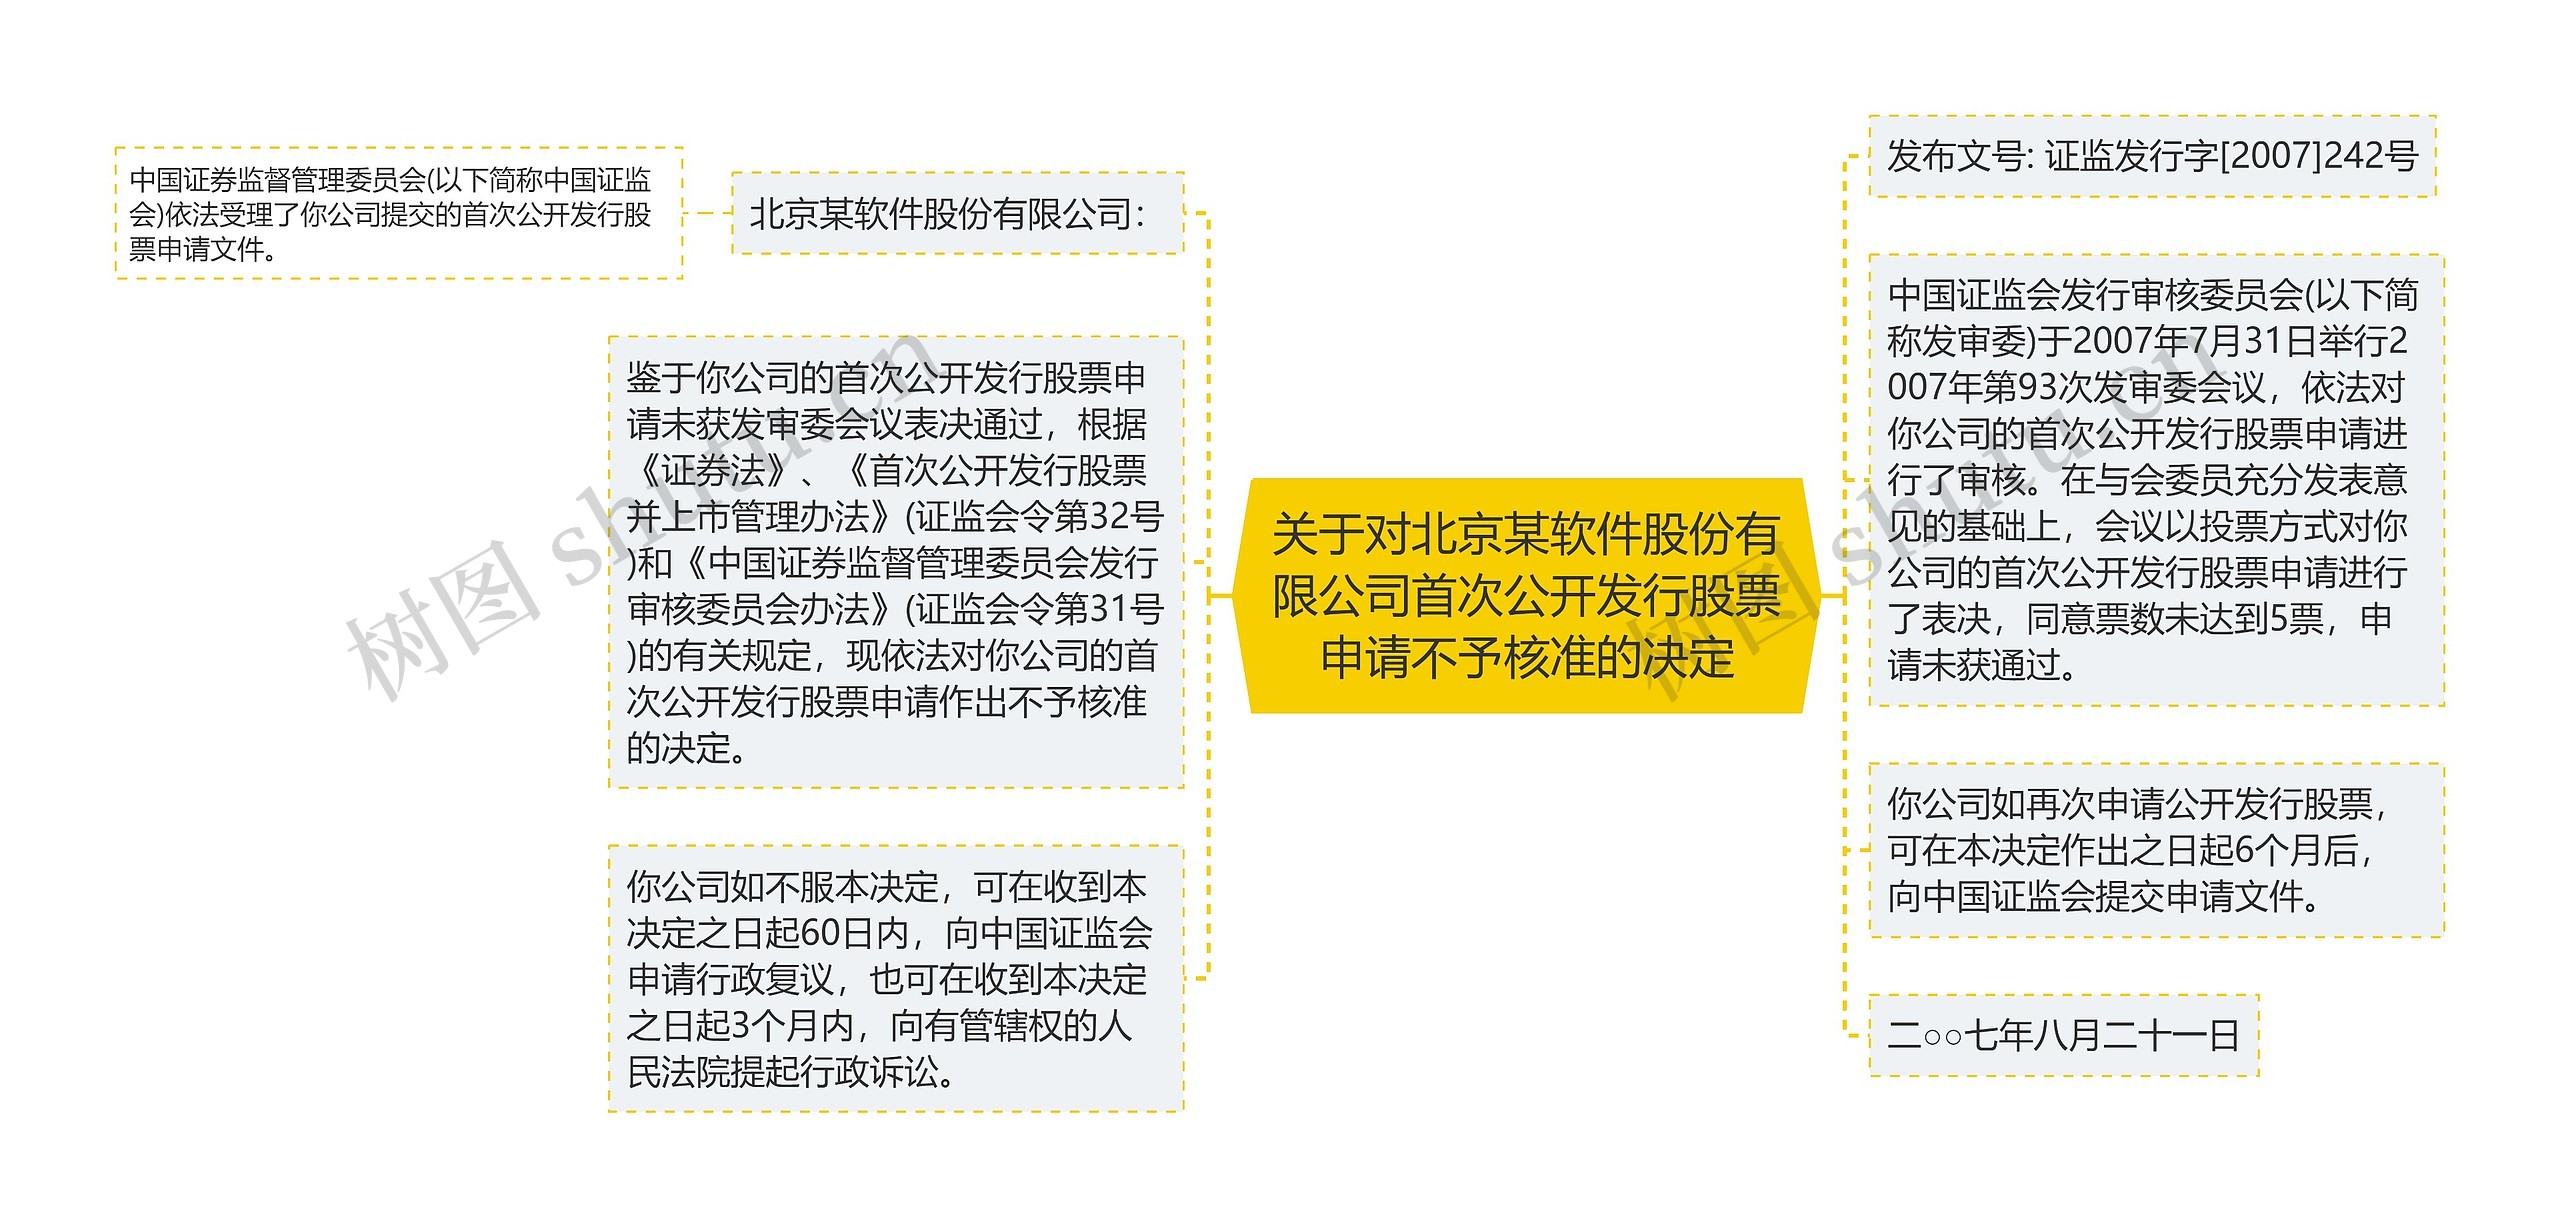 关于对北京某软件股份有限公司首次公开发行股票申请不予核准的决定思维导图